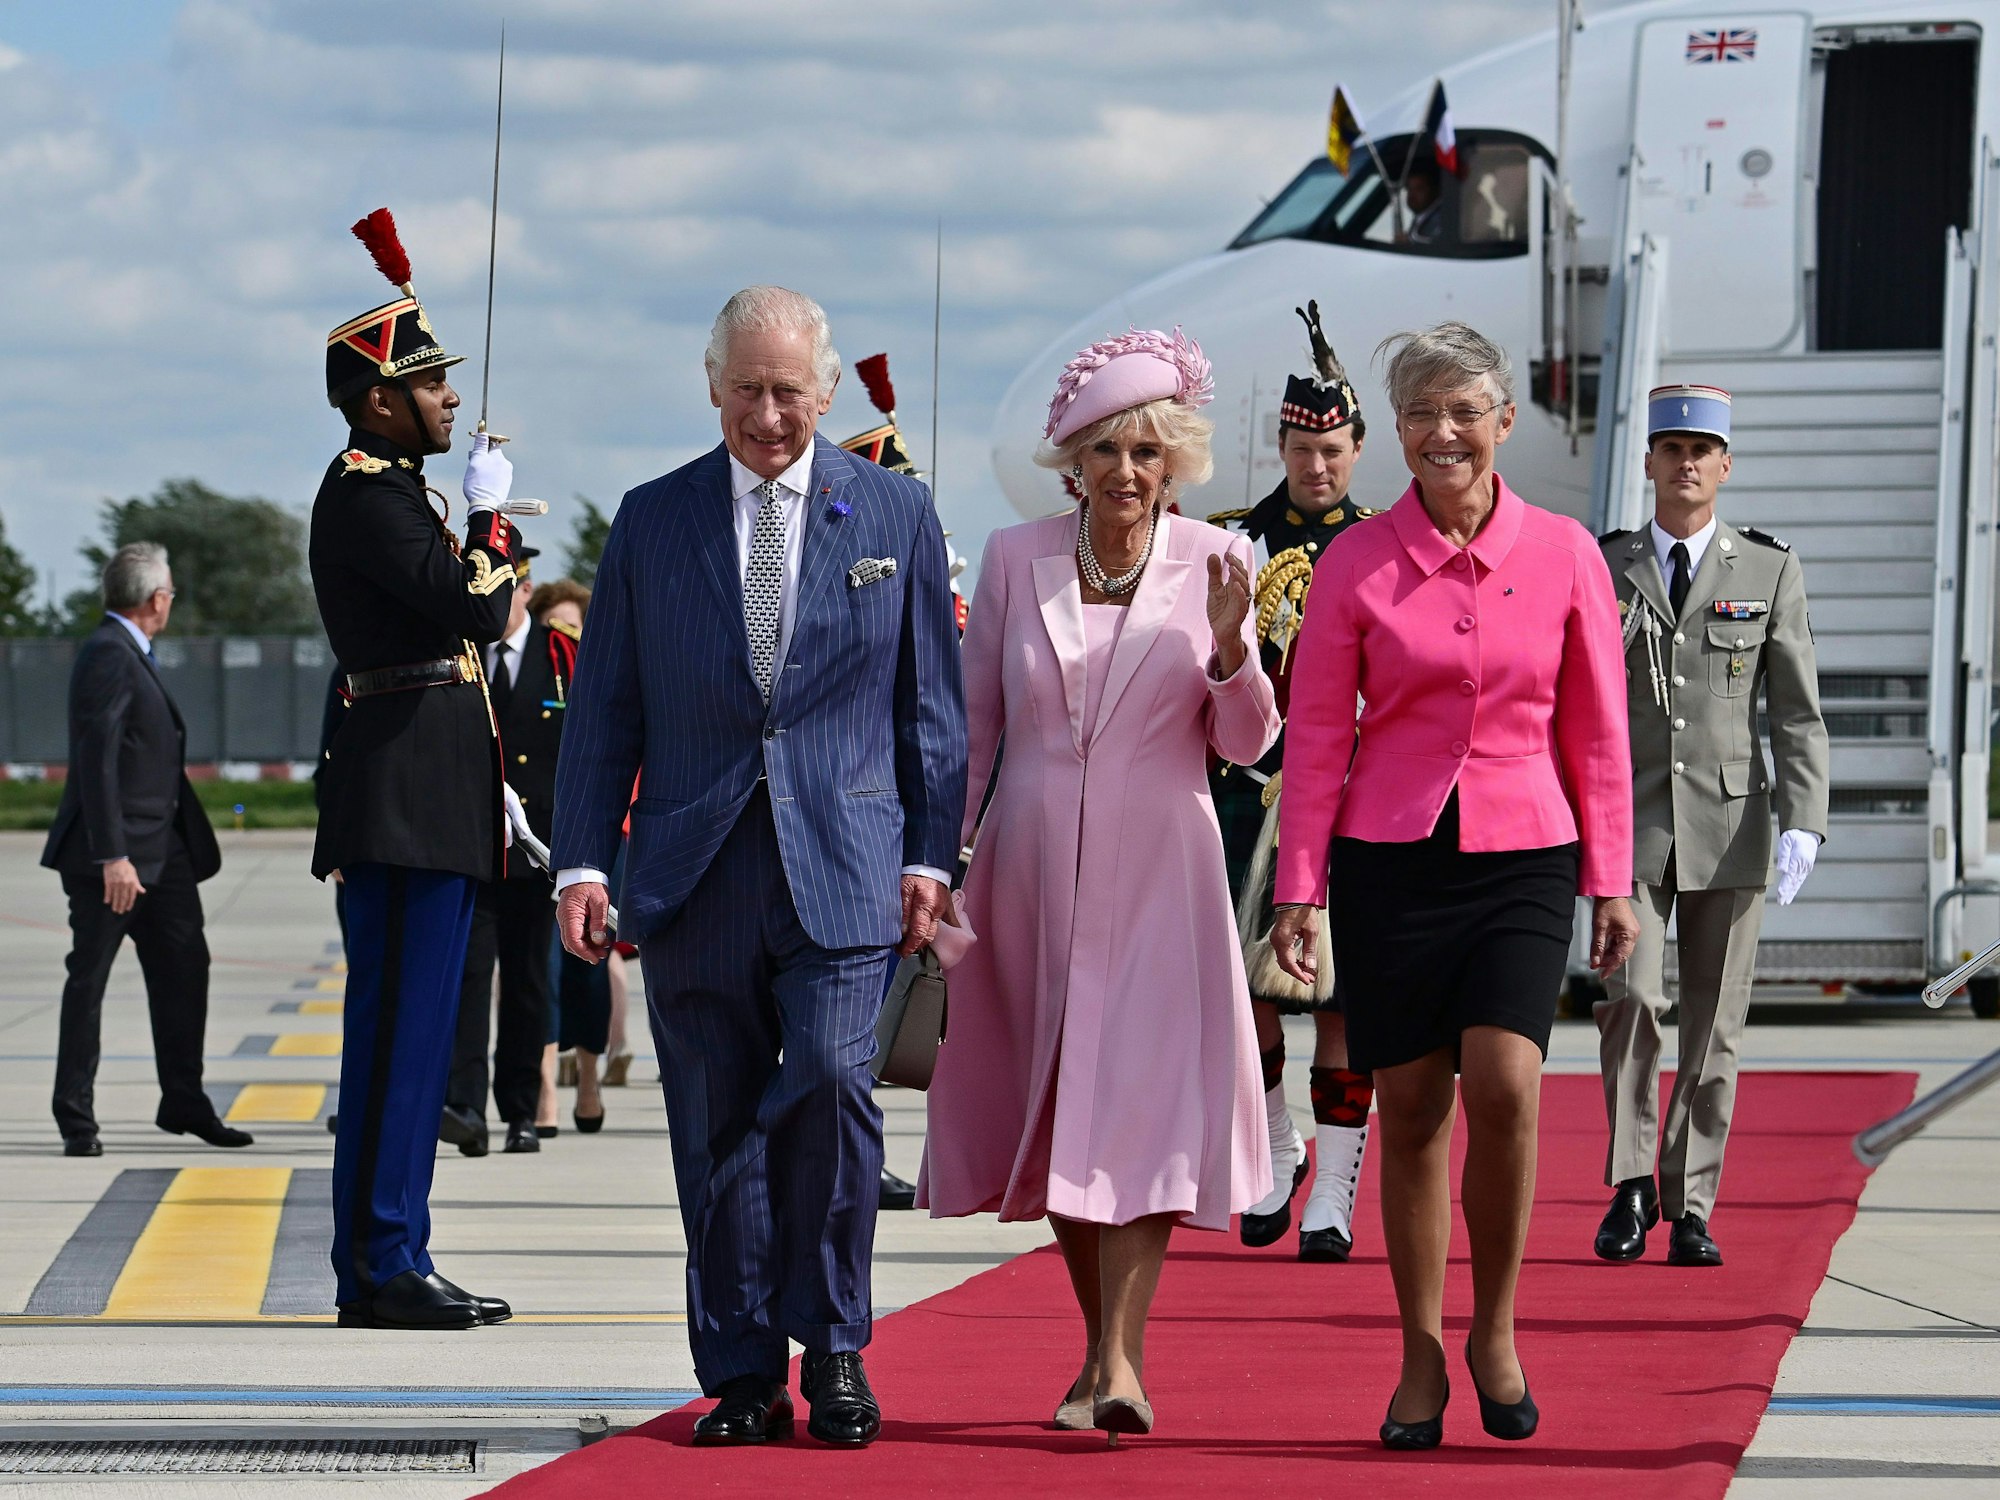 König Charles III. (l) und seine Gemahlin Camilla treffen Frankreichs Staatschef Emmanuel Macron. Im Bild werden sie von der französischen Premierministerin Elisabeth Borne begrüßt.